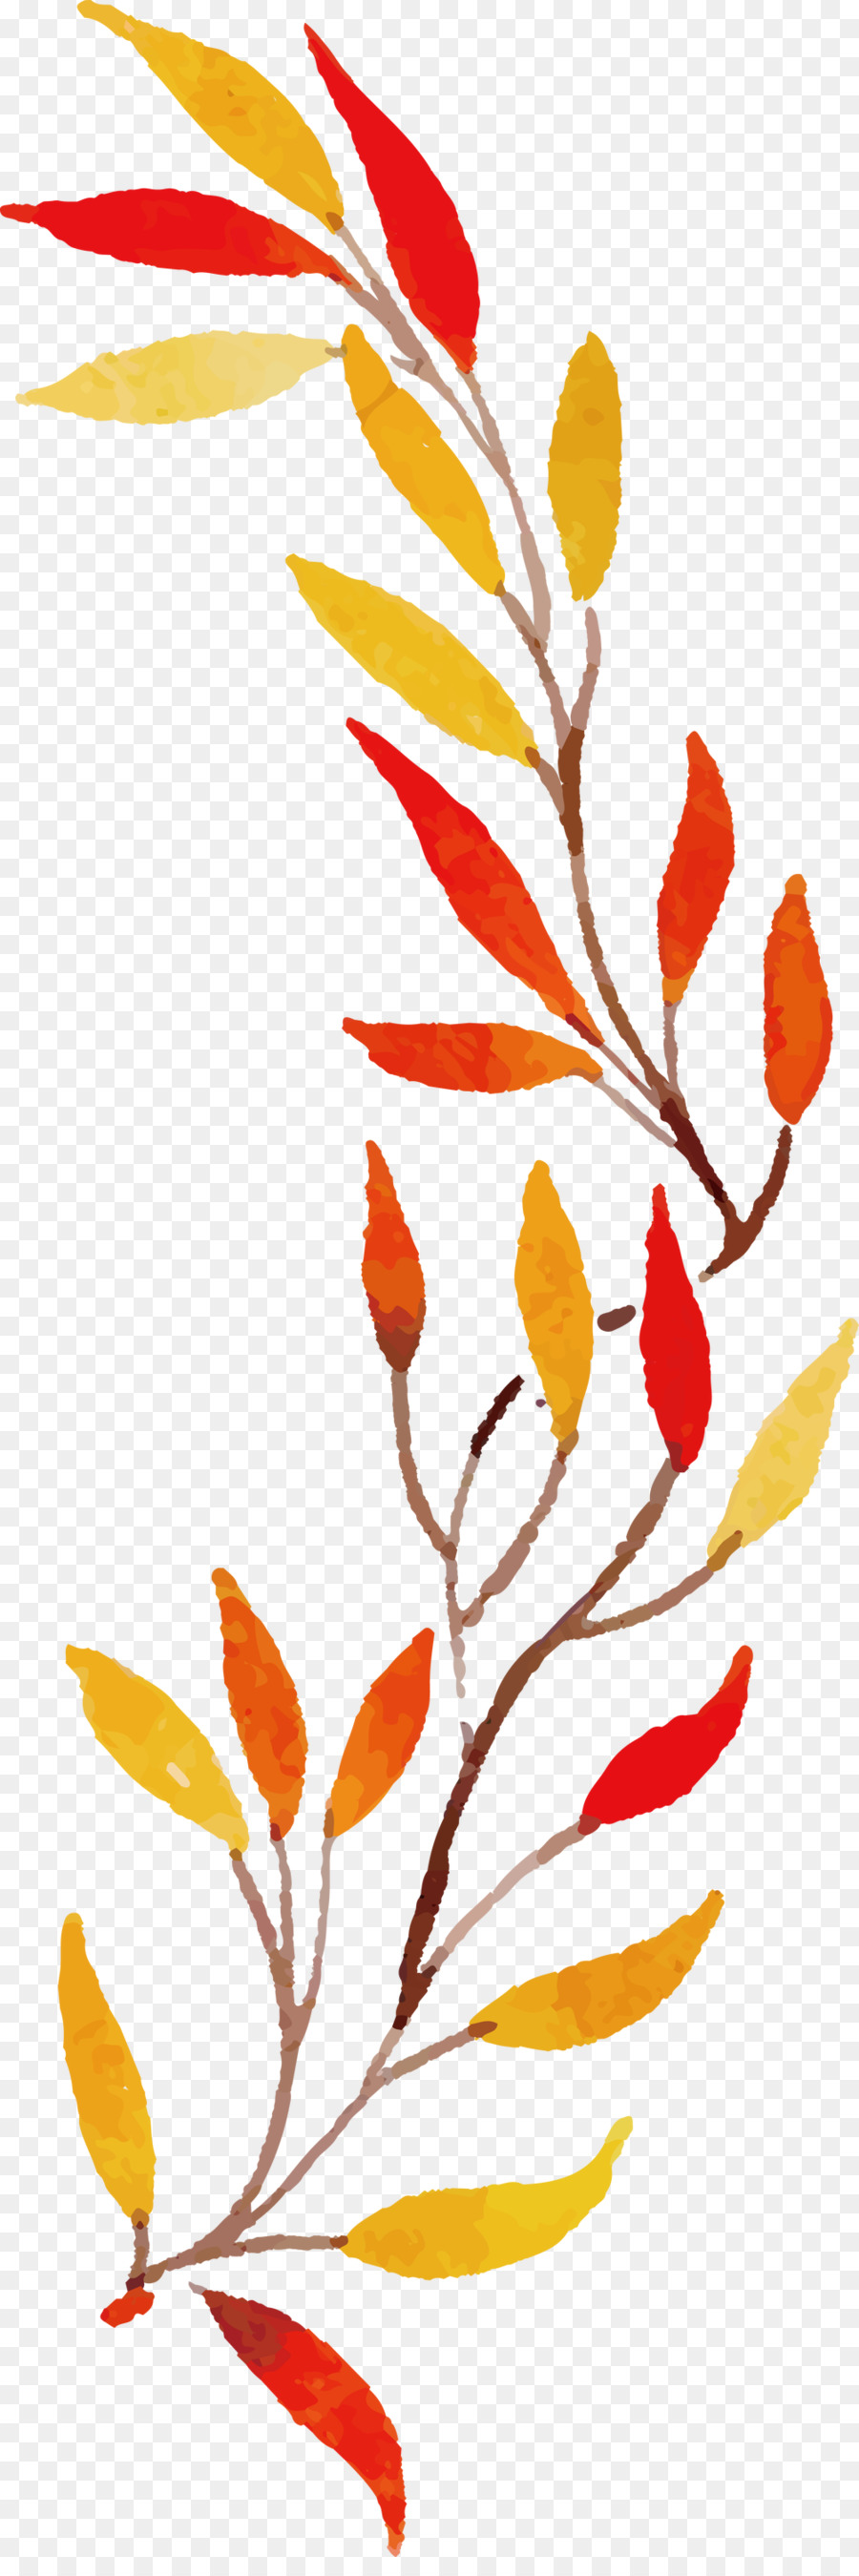 Herbstblatt buntes Blatt - 